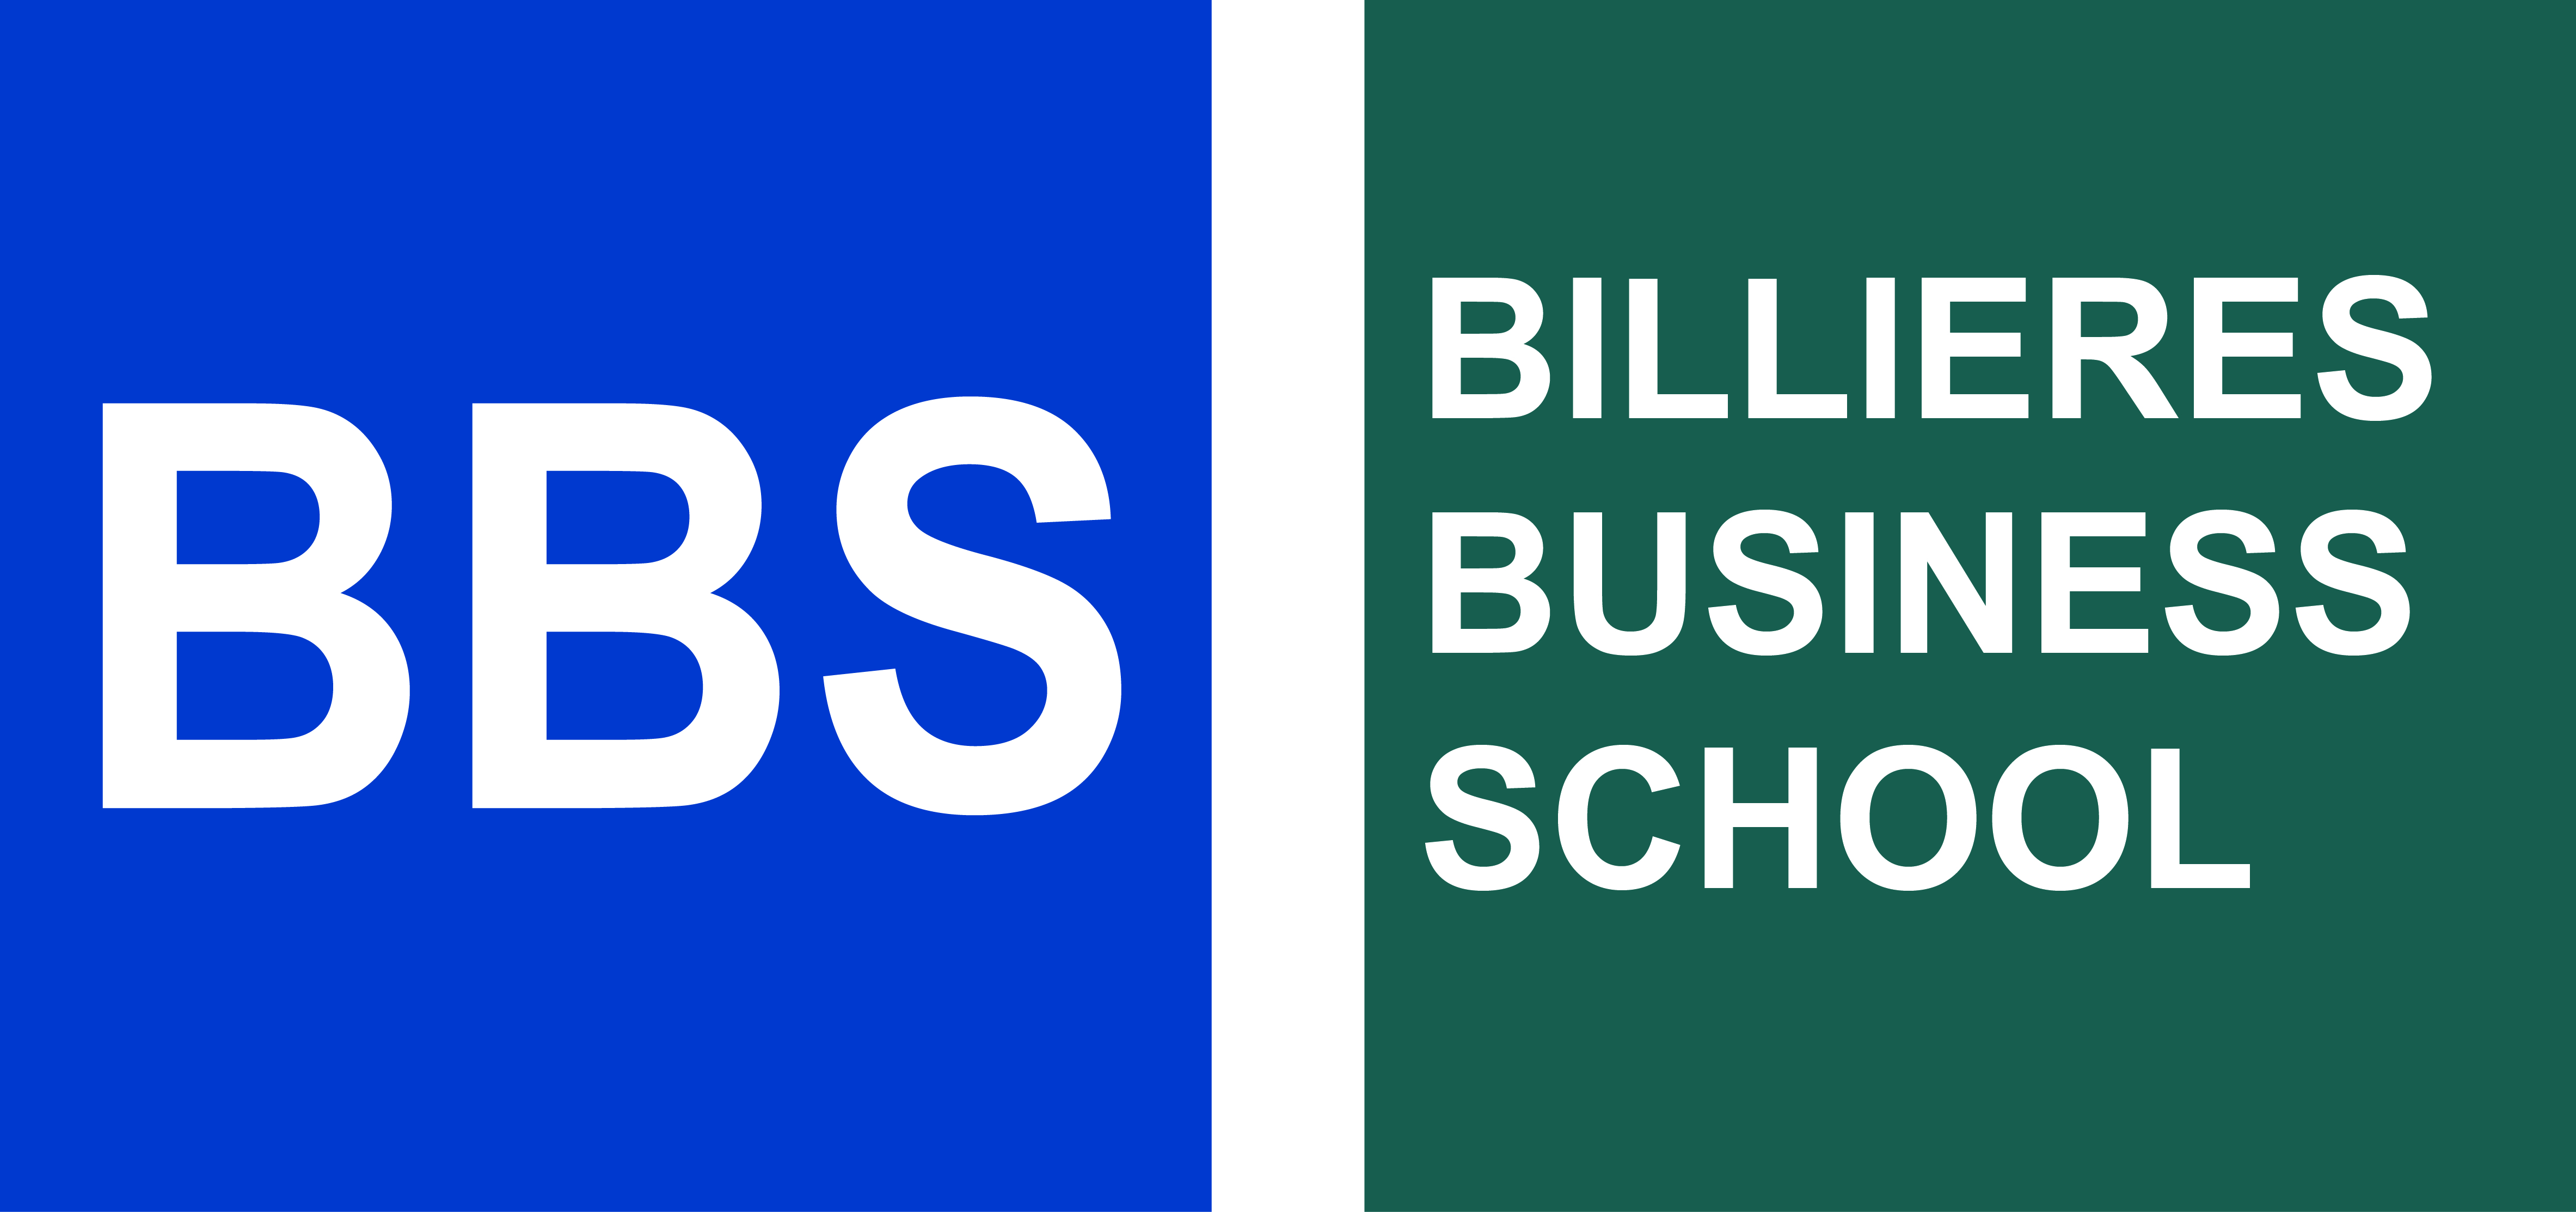 Billières Business School